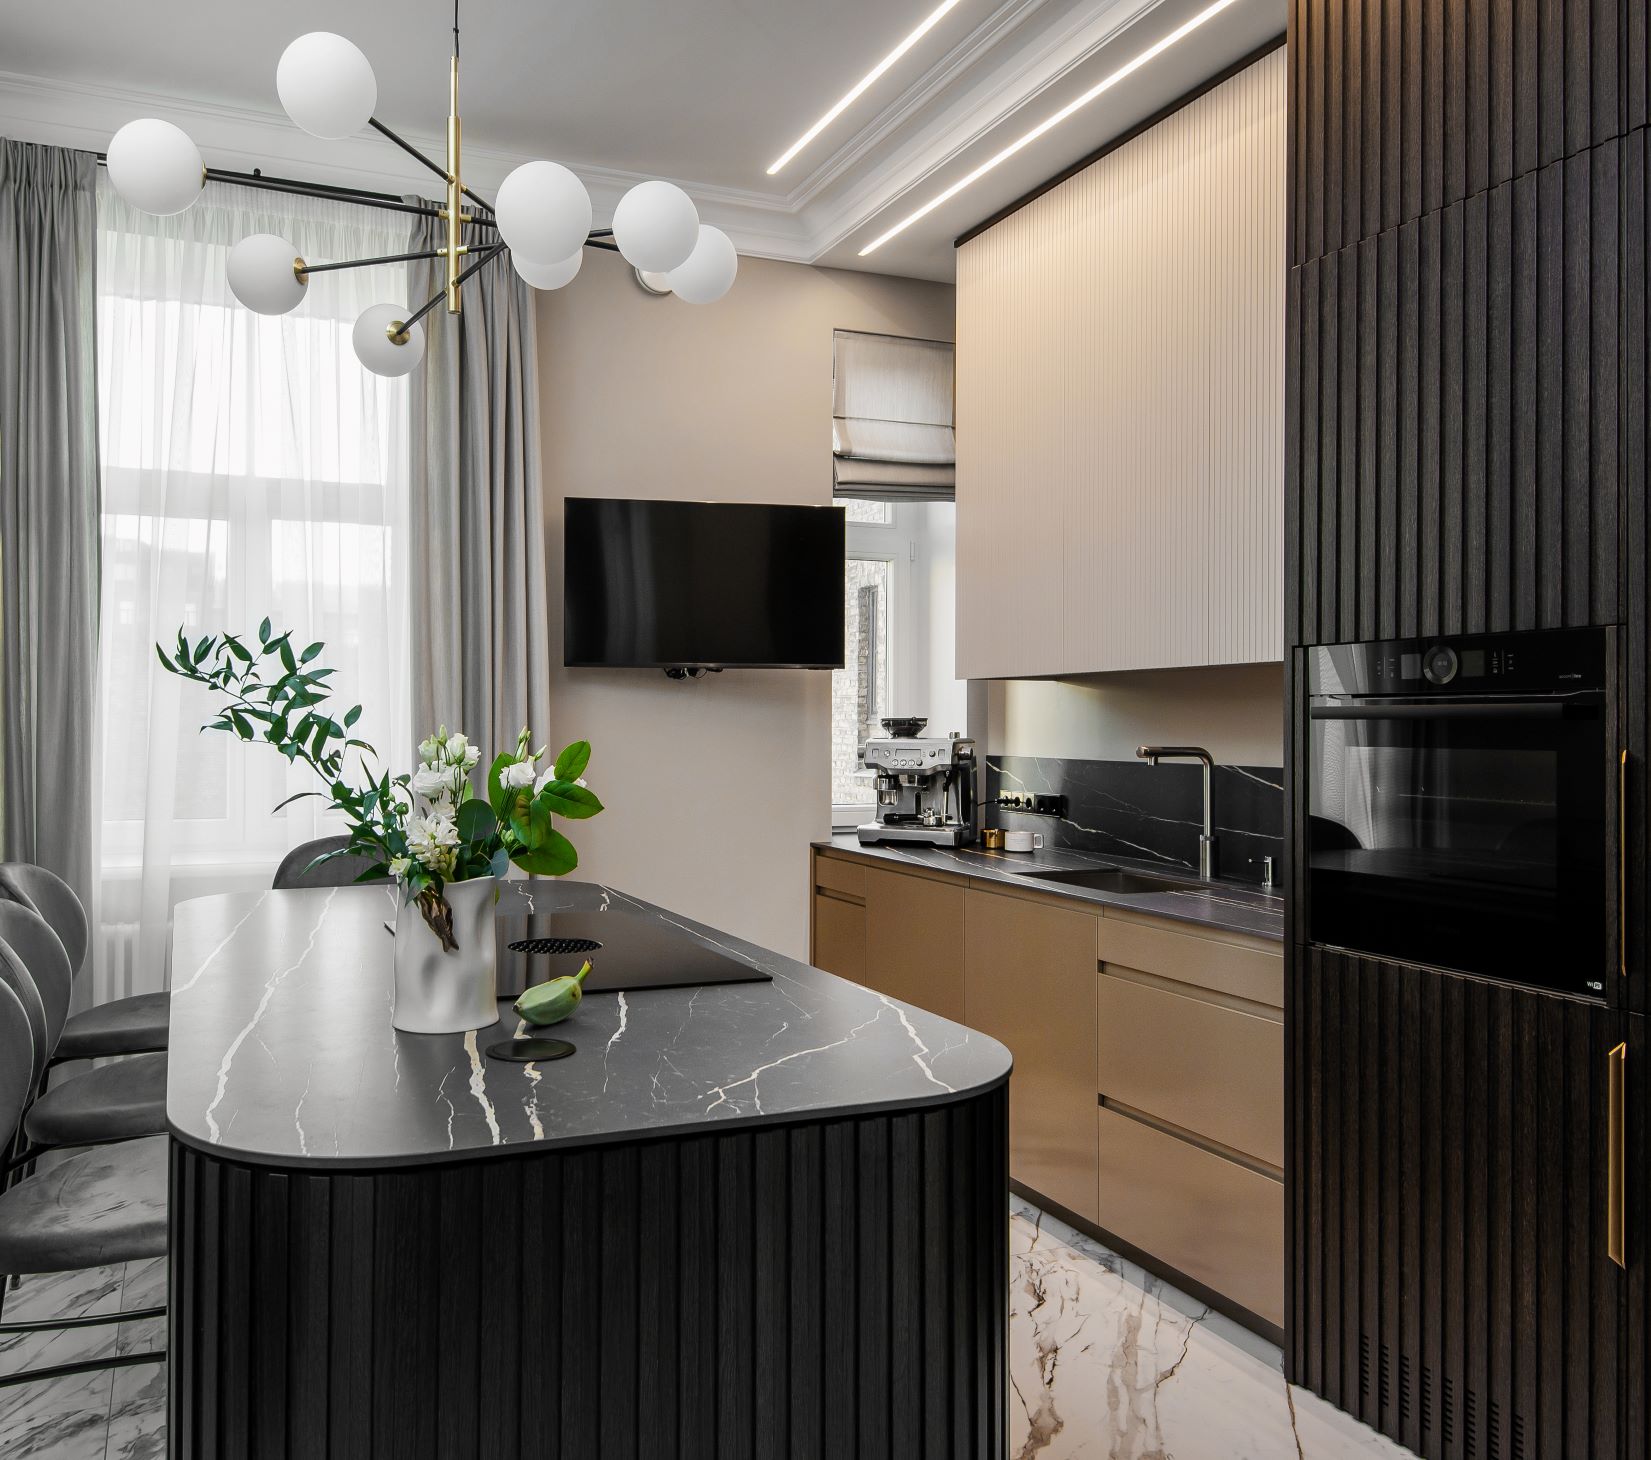 Klasisks dzīvoklis Rīgas centrā - virtuve ar dizaina elementiem